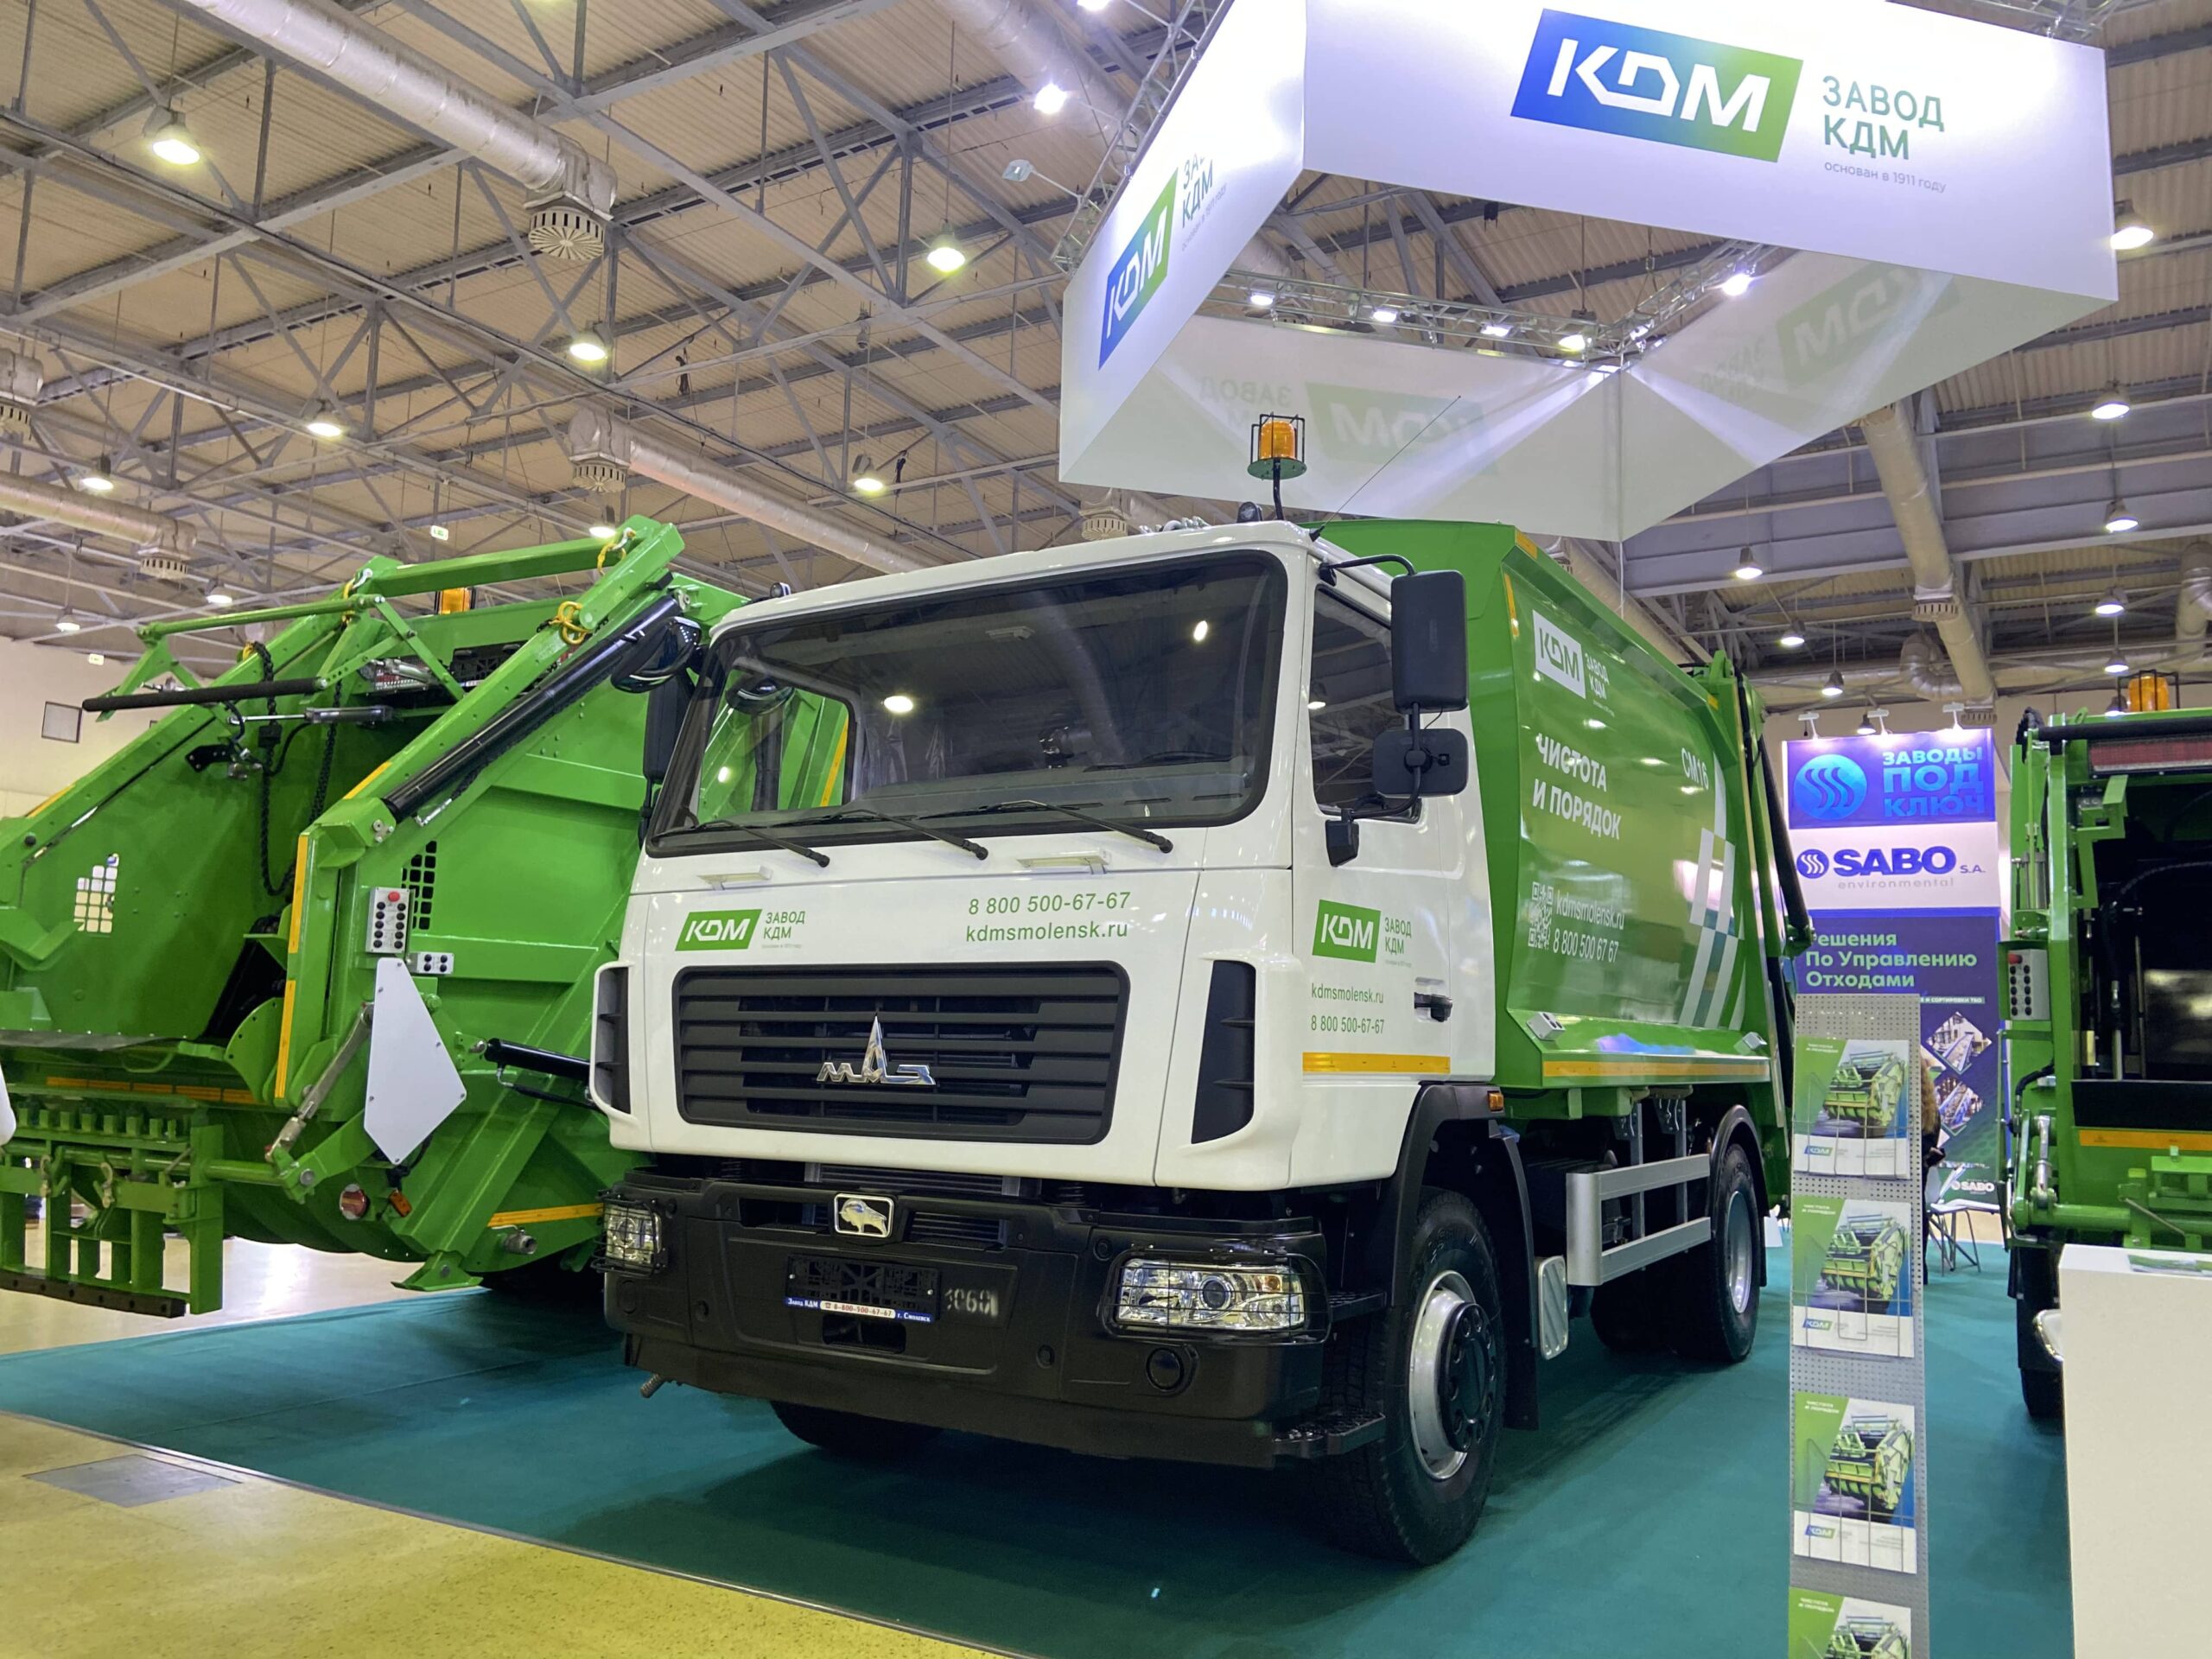 Смоленский «Завод КДМ» представил бюджетную версию среднетоннажного мусоровоза